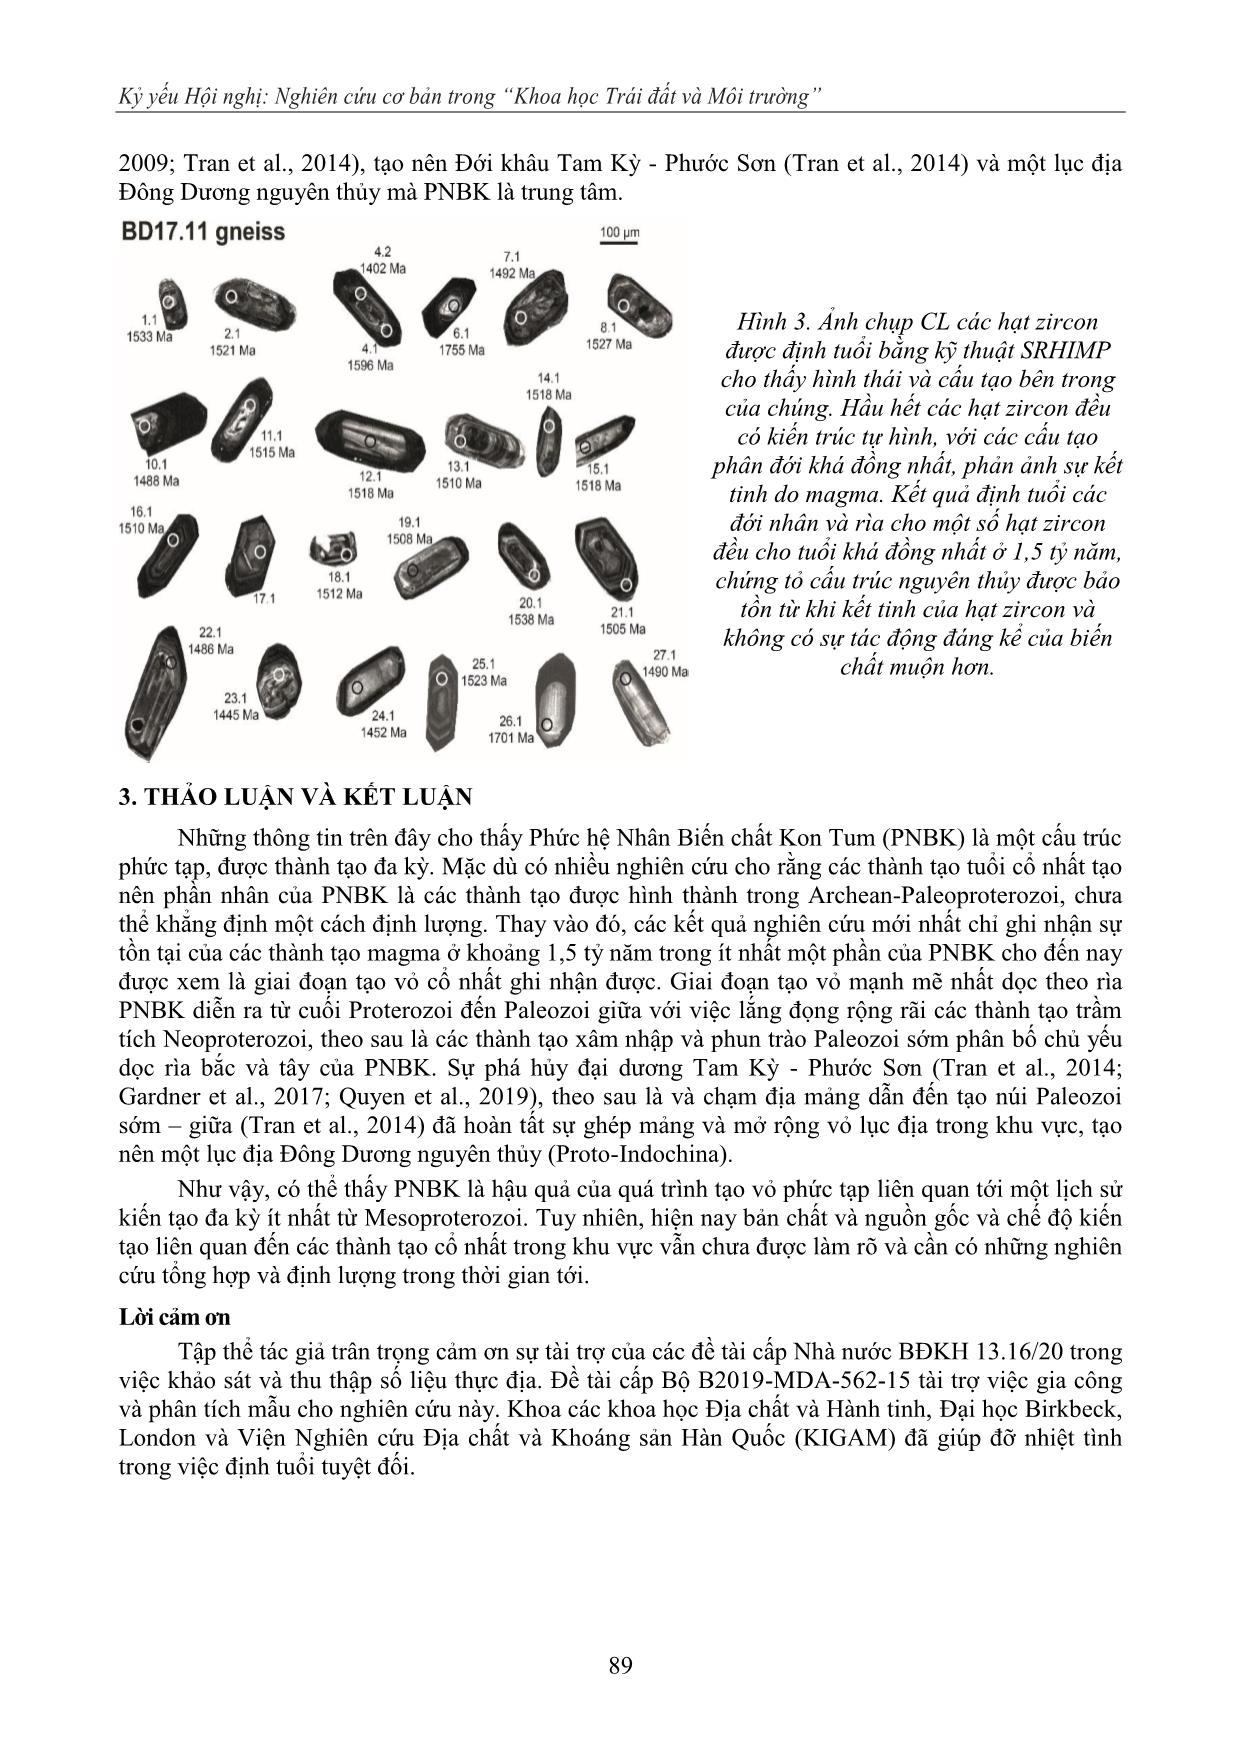 Sự tạo vỏ tiền Cambri trong phức hệ nhân biến chất Kon Tum (PNBK): bằng chứng và tồn tại cho một mô hình kiến tạo hiện đại trang 5